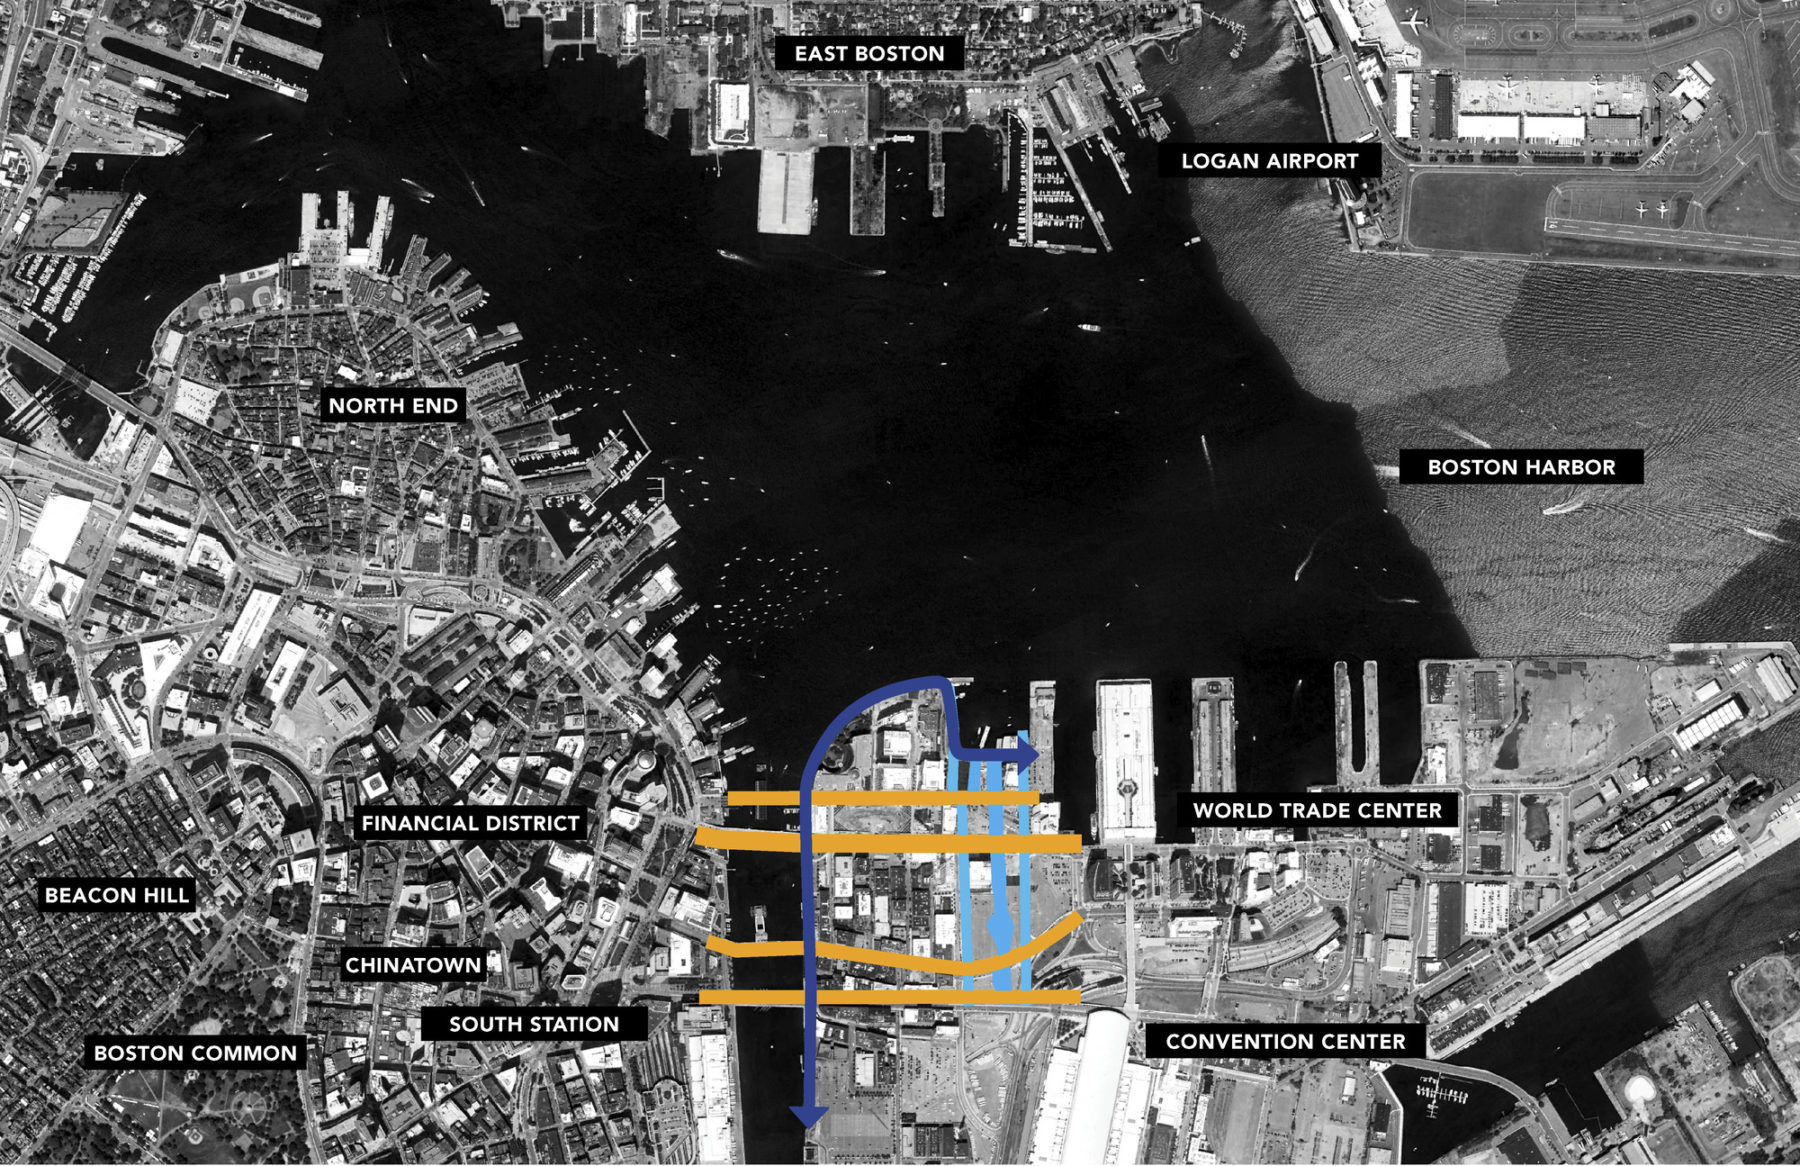 Diagram of seaport neighborhood